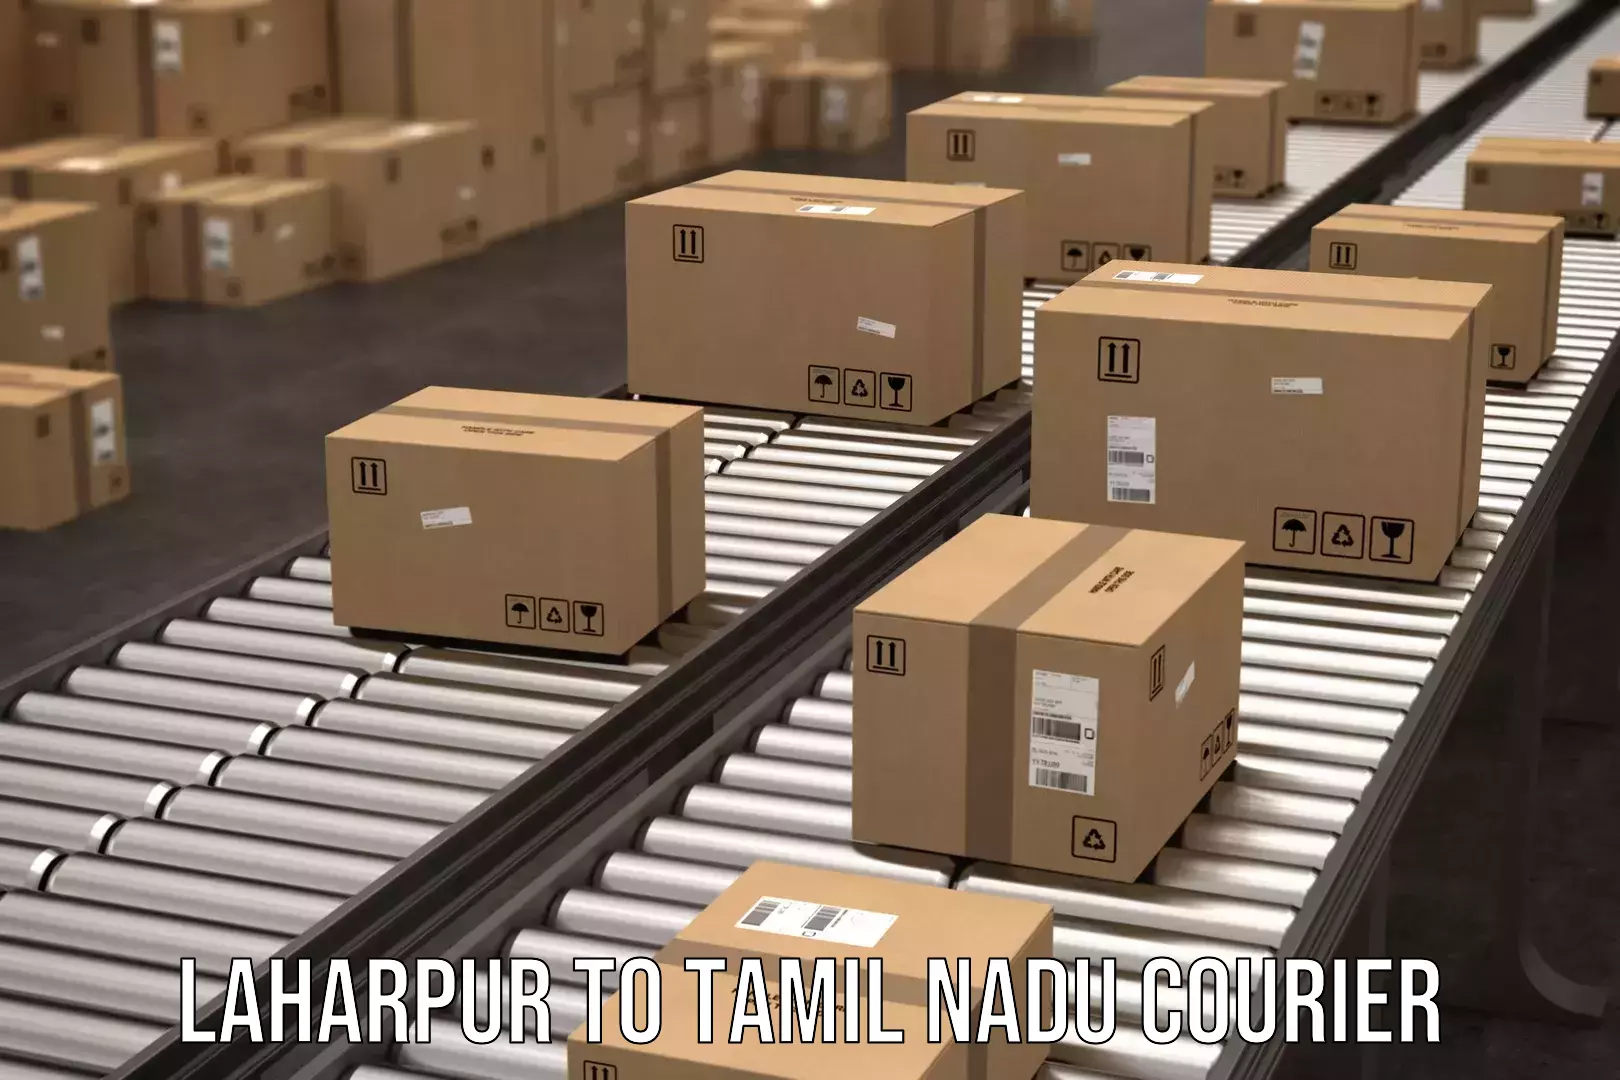 Seamless shipping experience Laharpur to Tamil Nadu